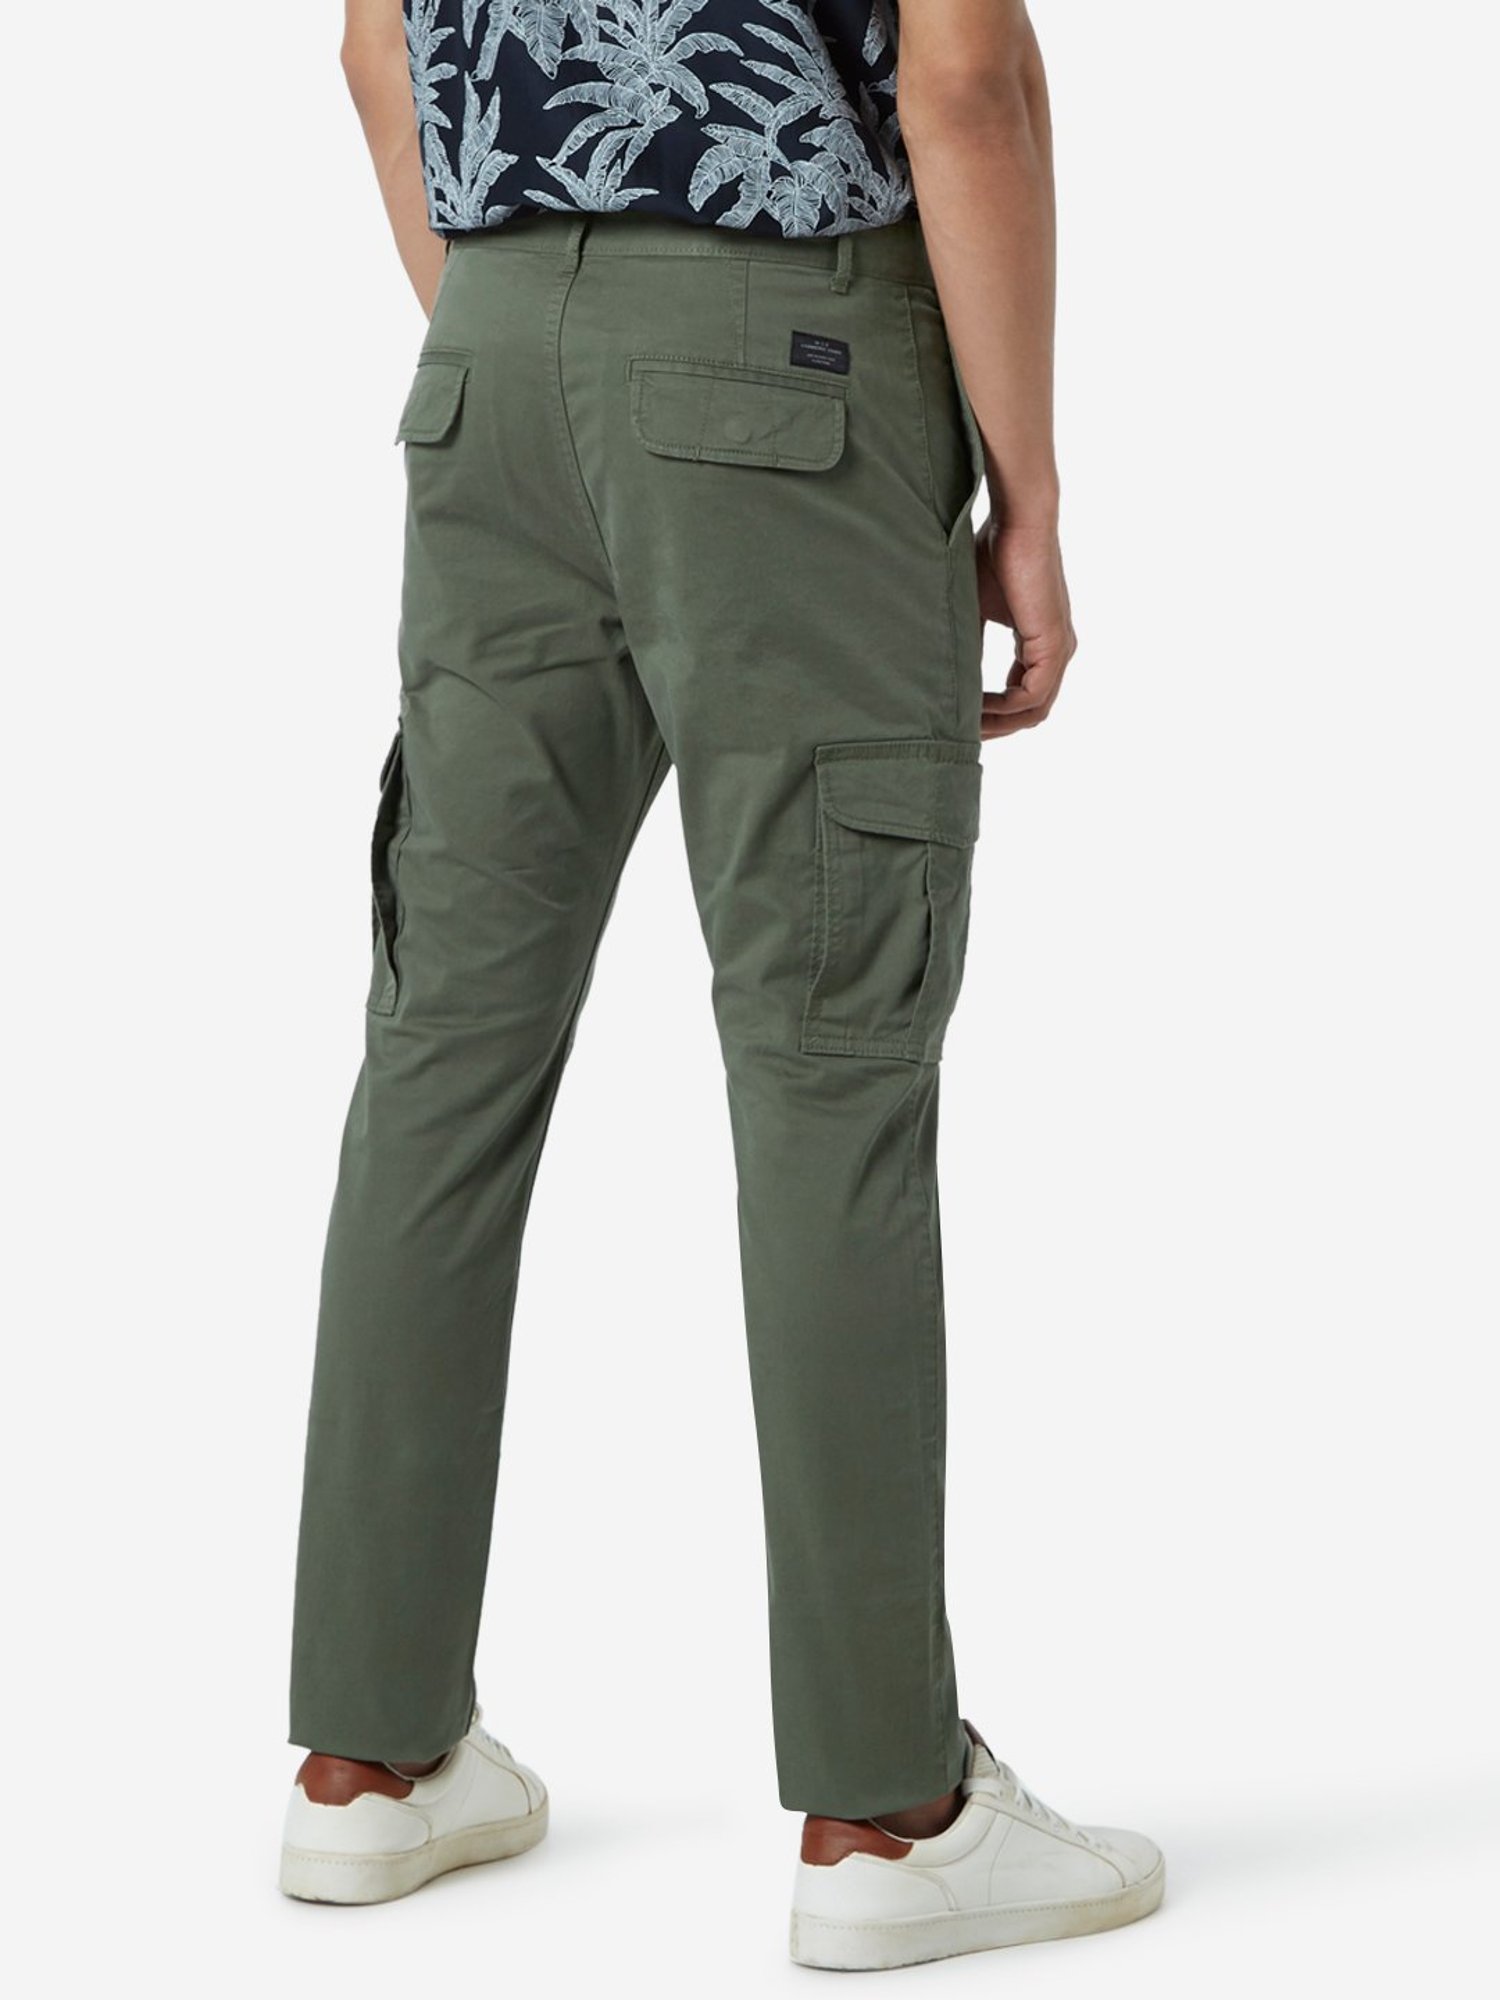 Cargo Pants Olive Green Baggy Fit Cargos for Men Online  Powerlook